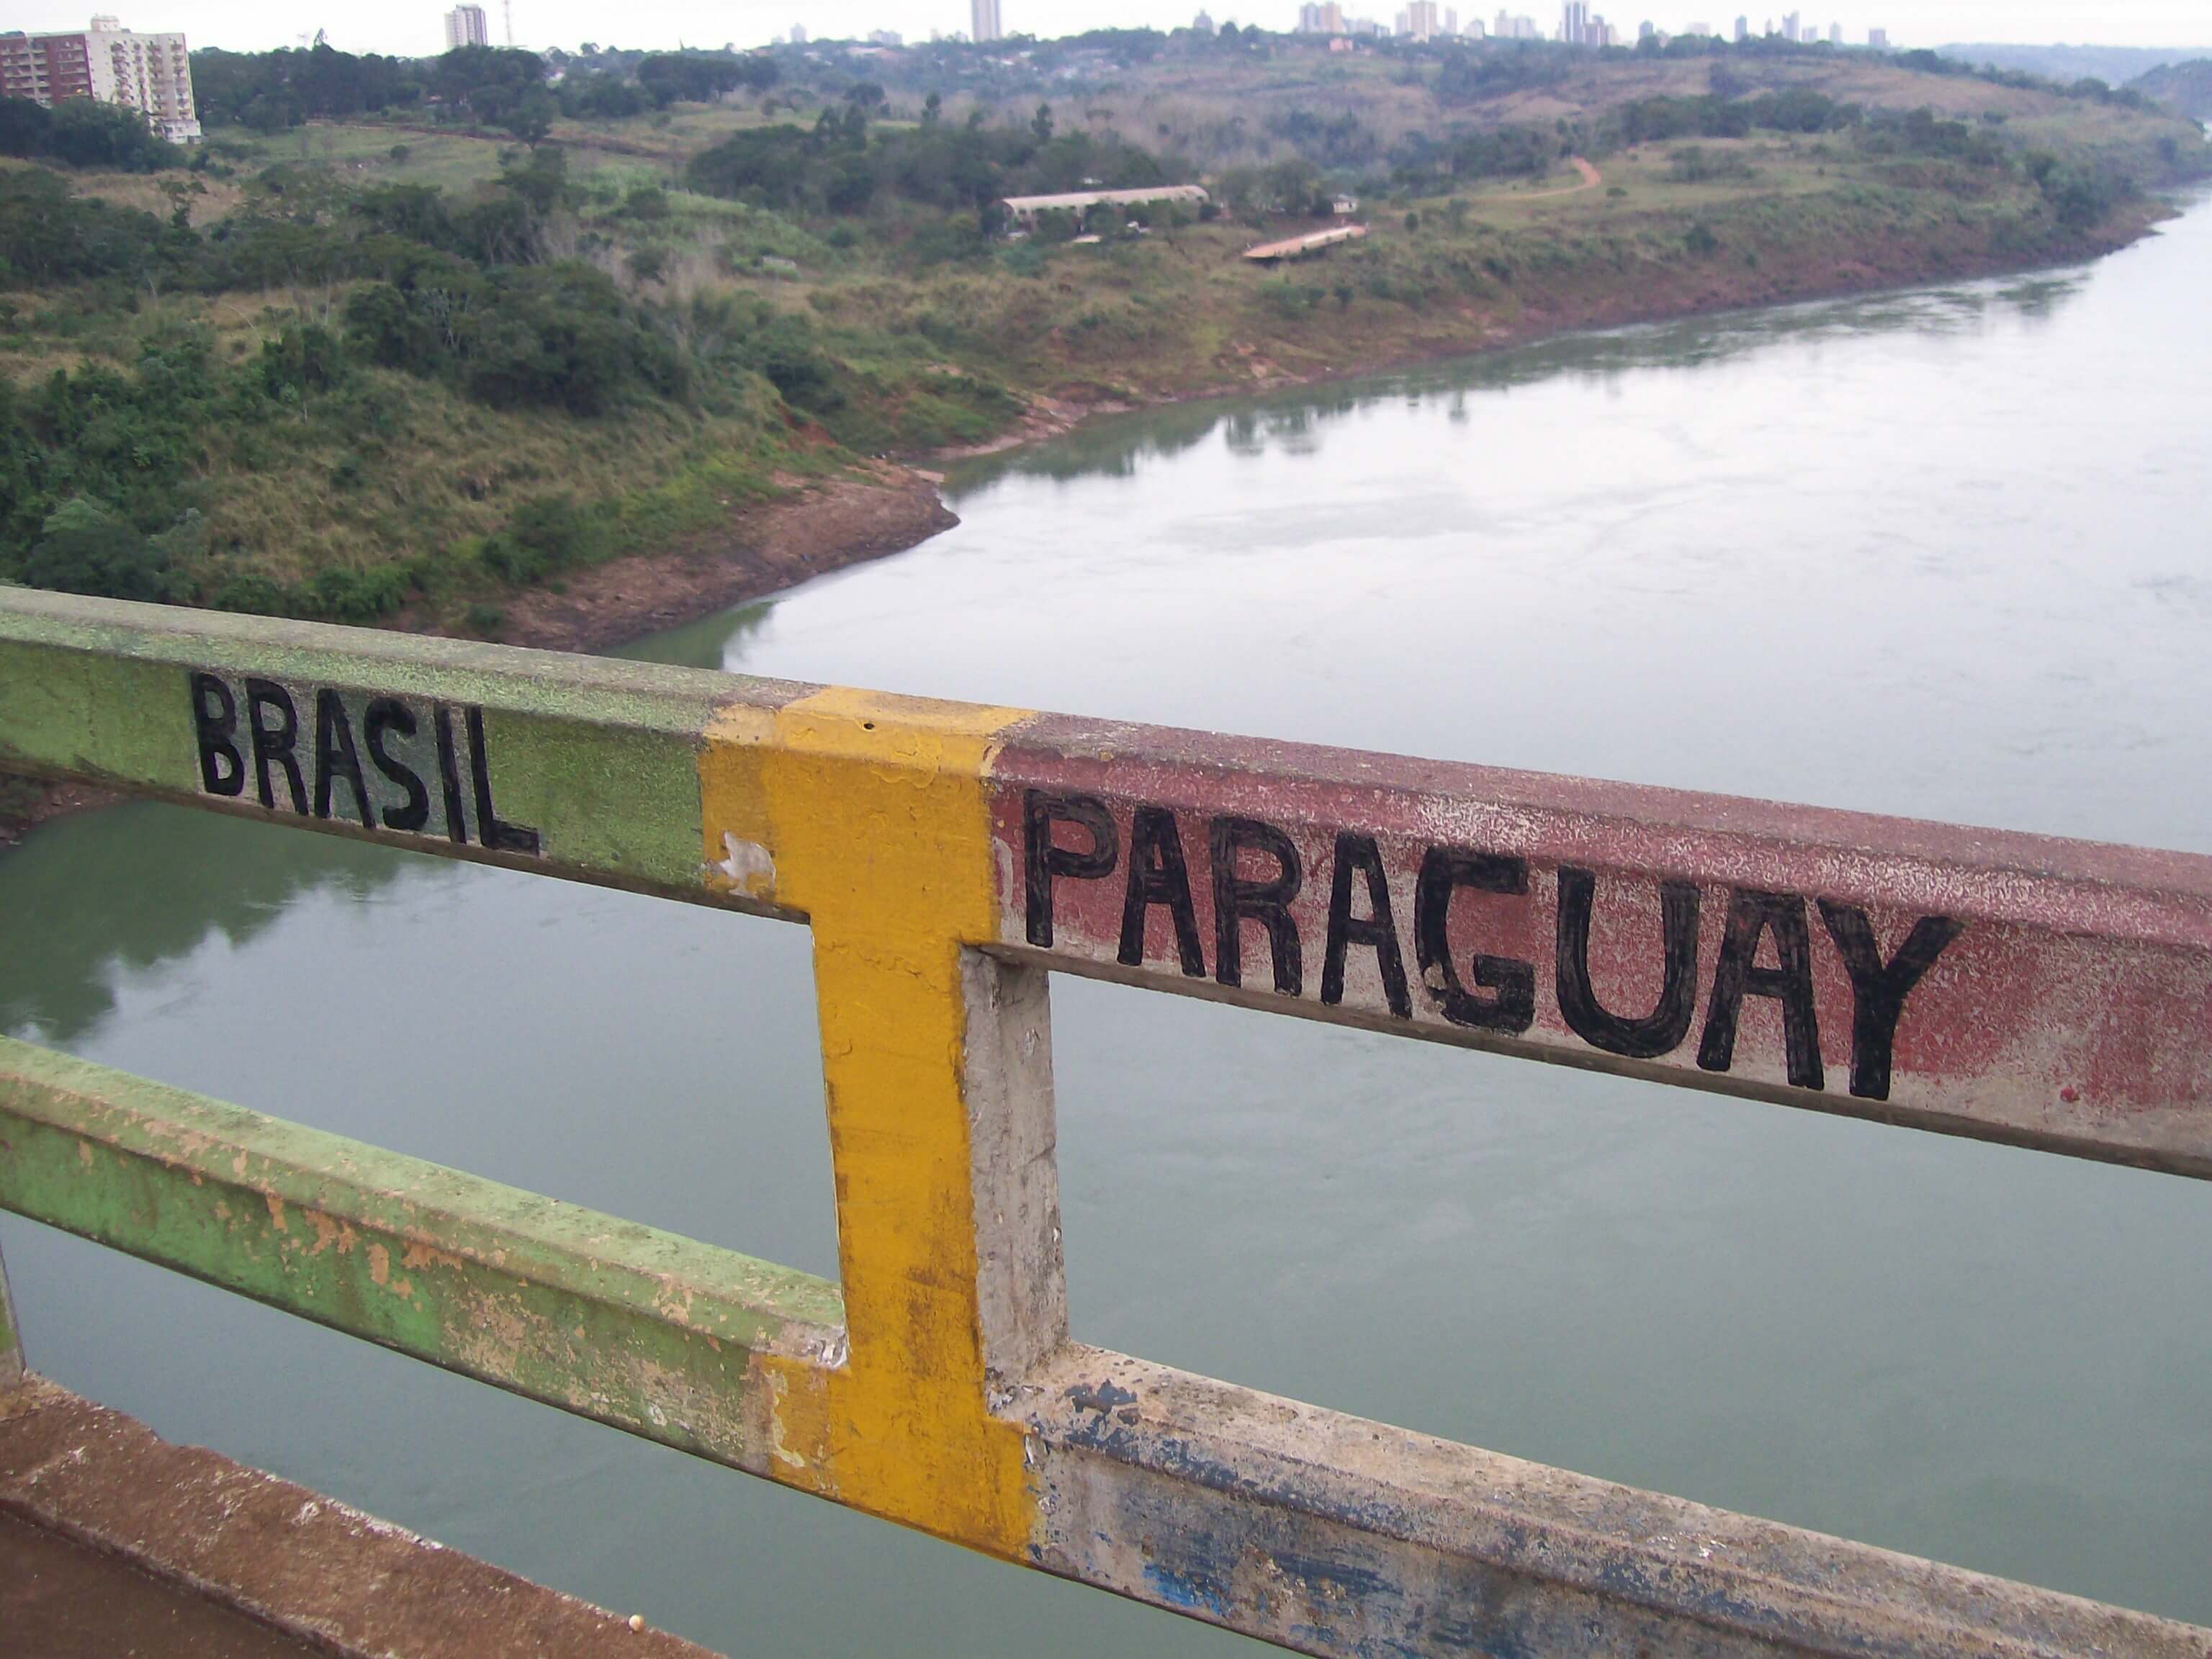 Brazil.Paraguay.border Seguro de automóveis serve para viagens fora do país?